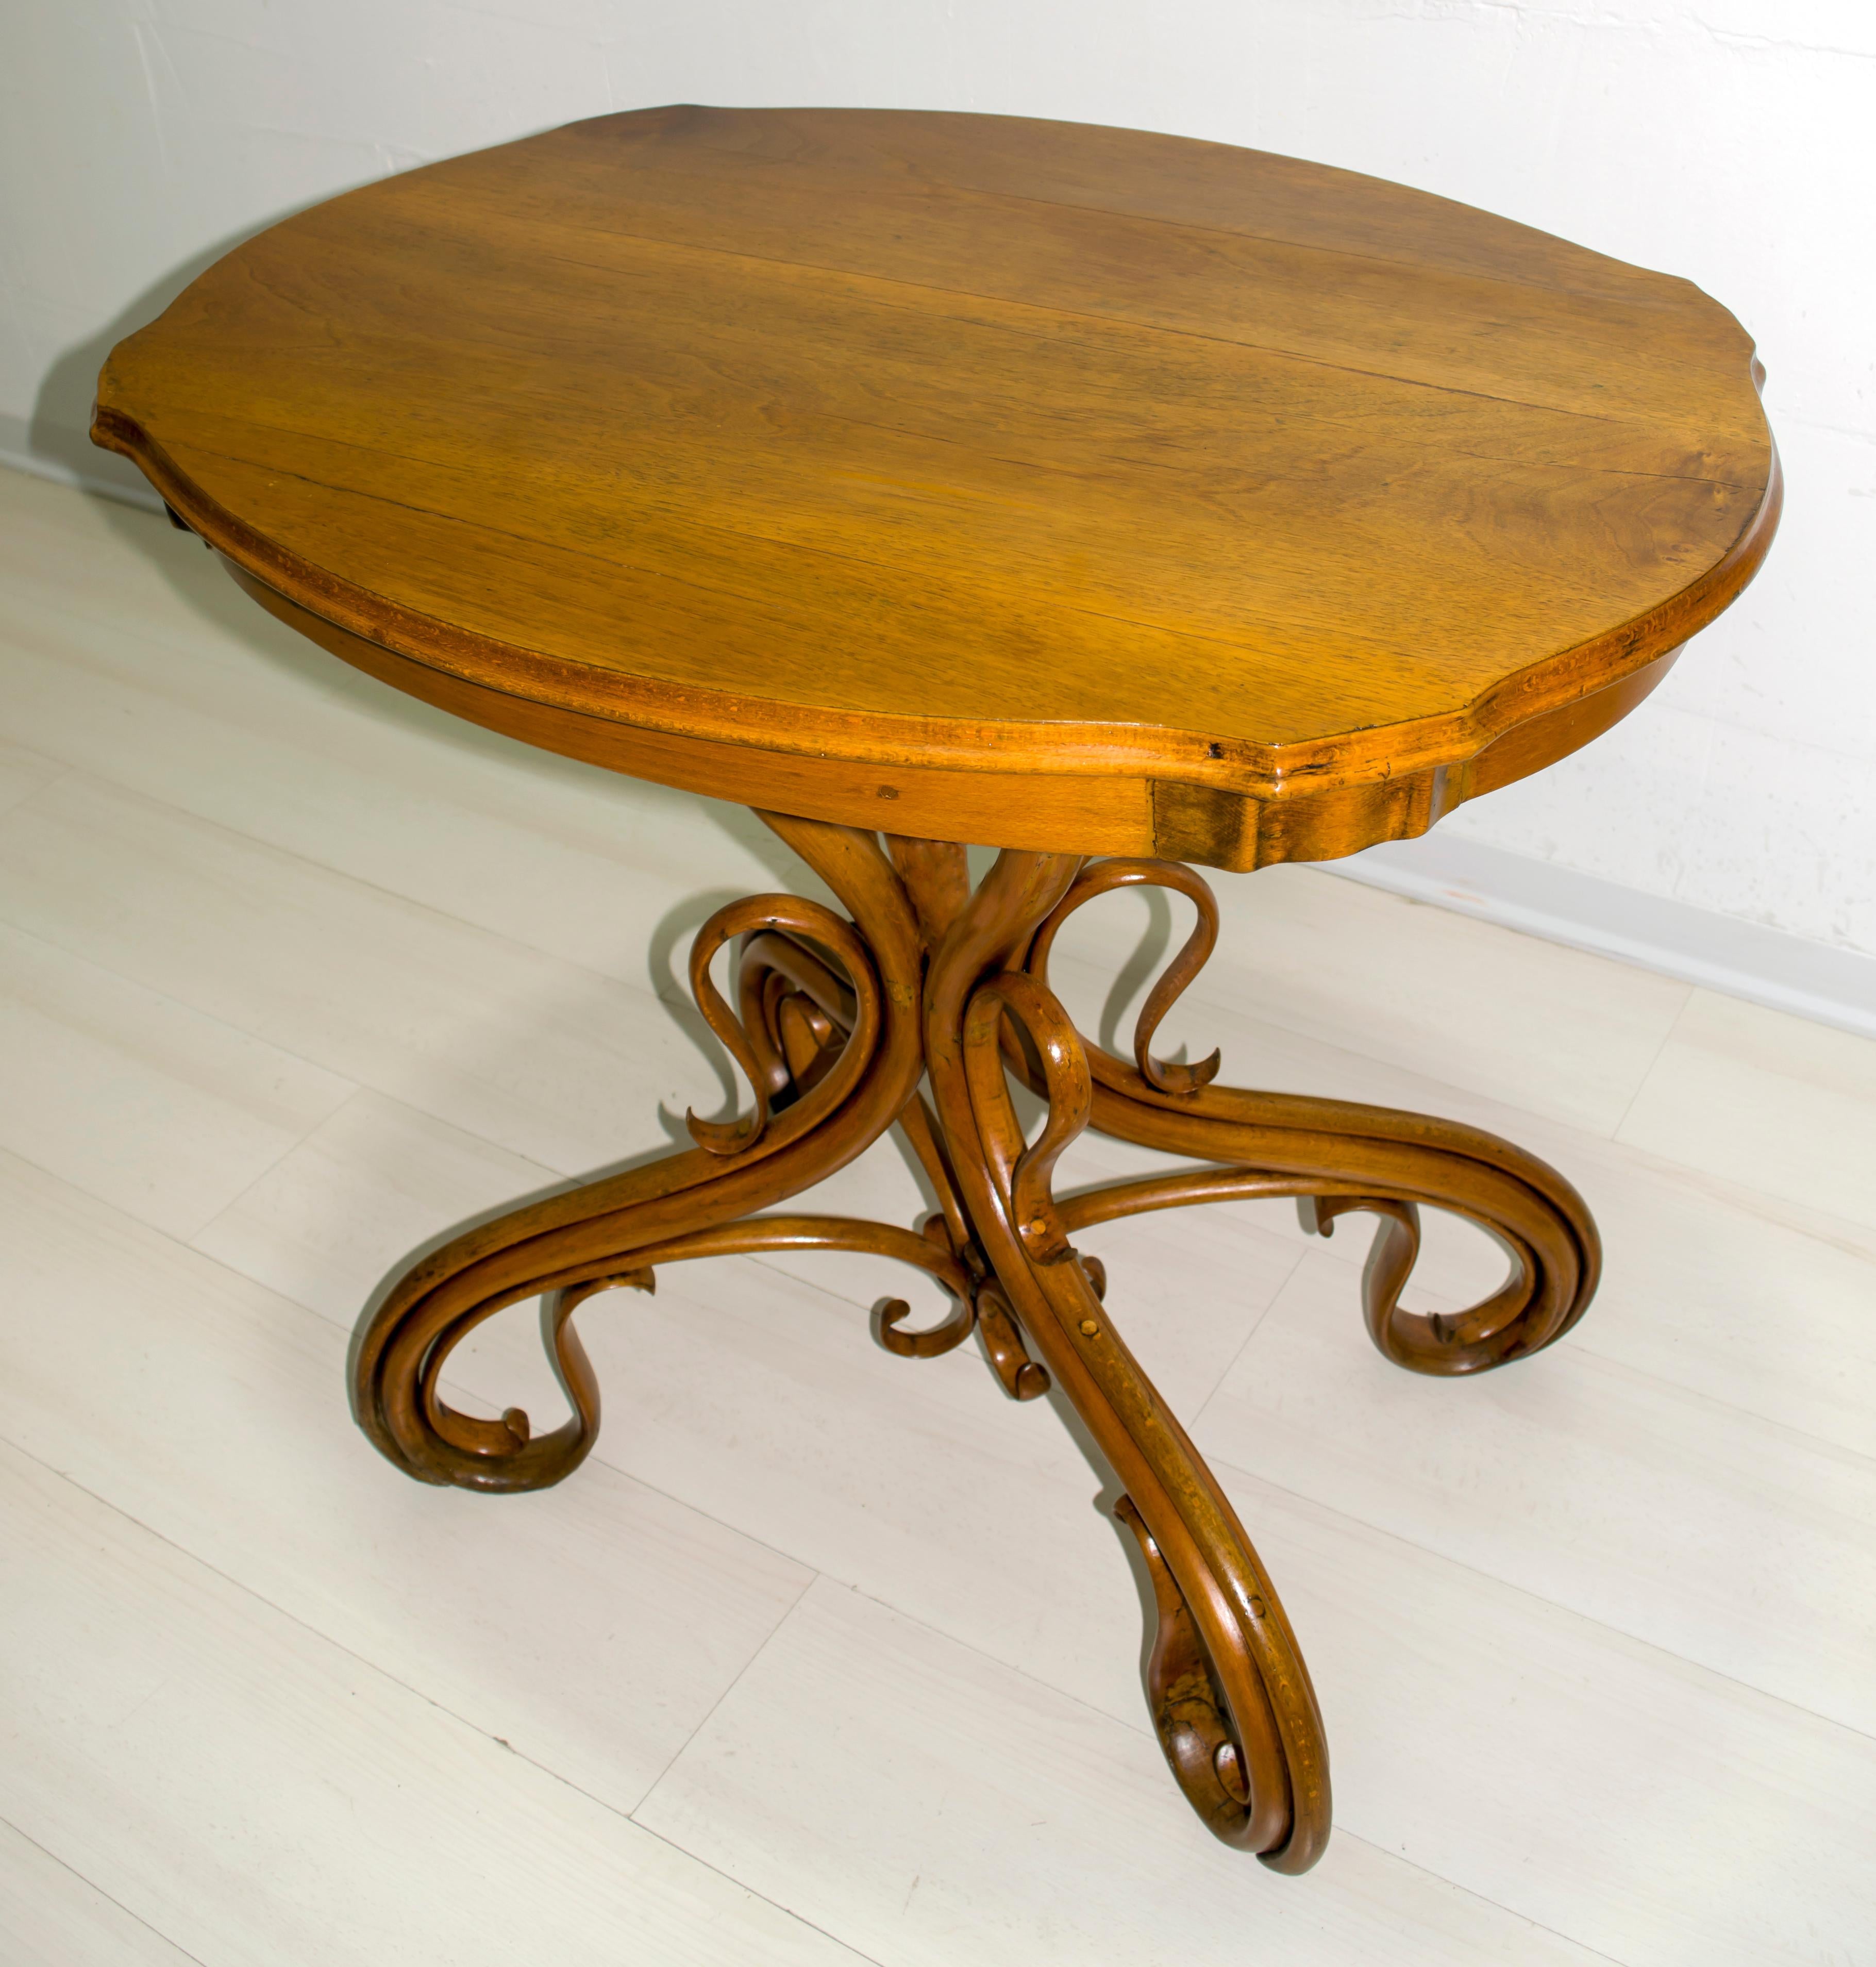 Gebrüder Thonet Thonet coffee table No.1, top in beechwood, curved solid wood, walnut veneer. Vienna, 1880

